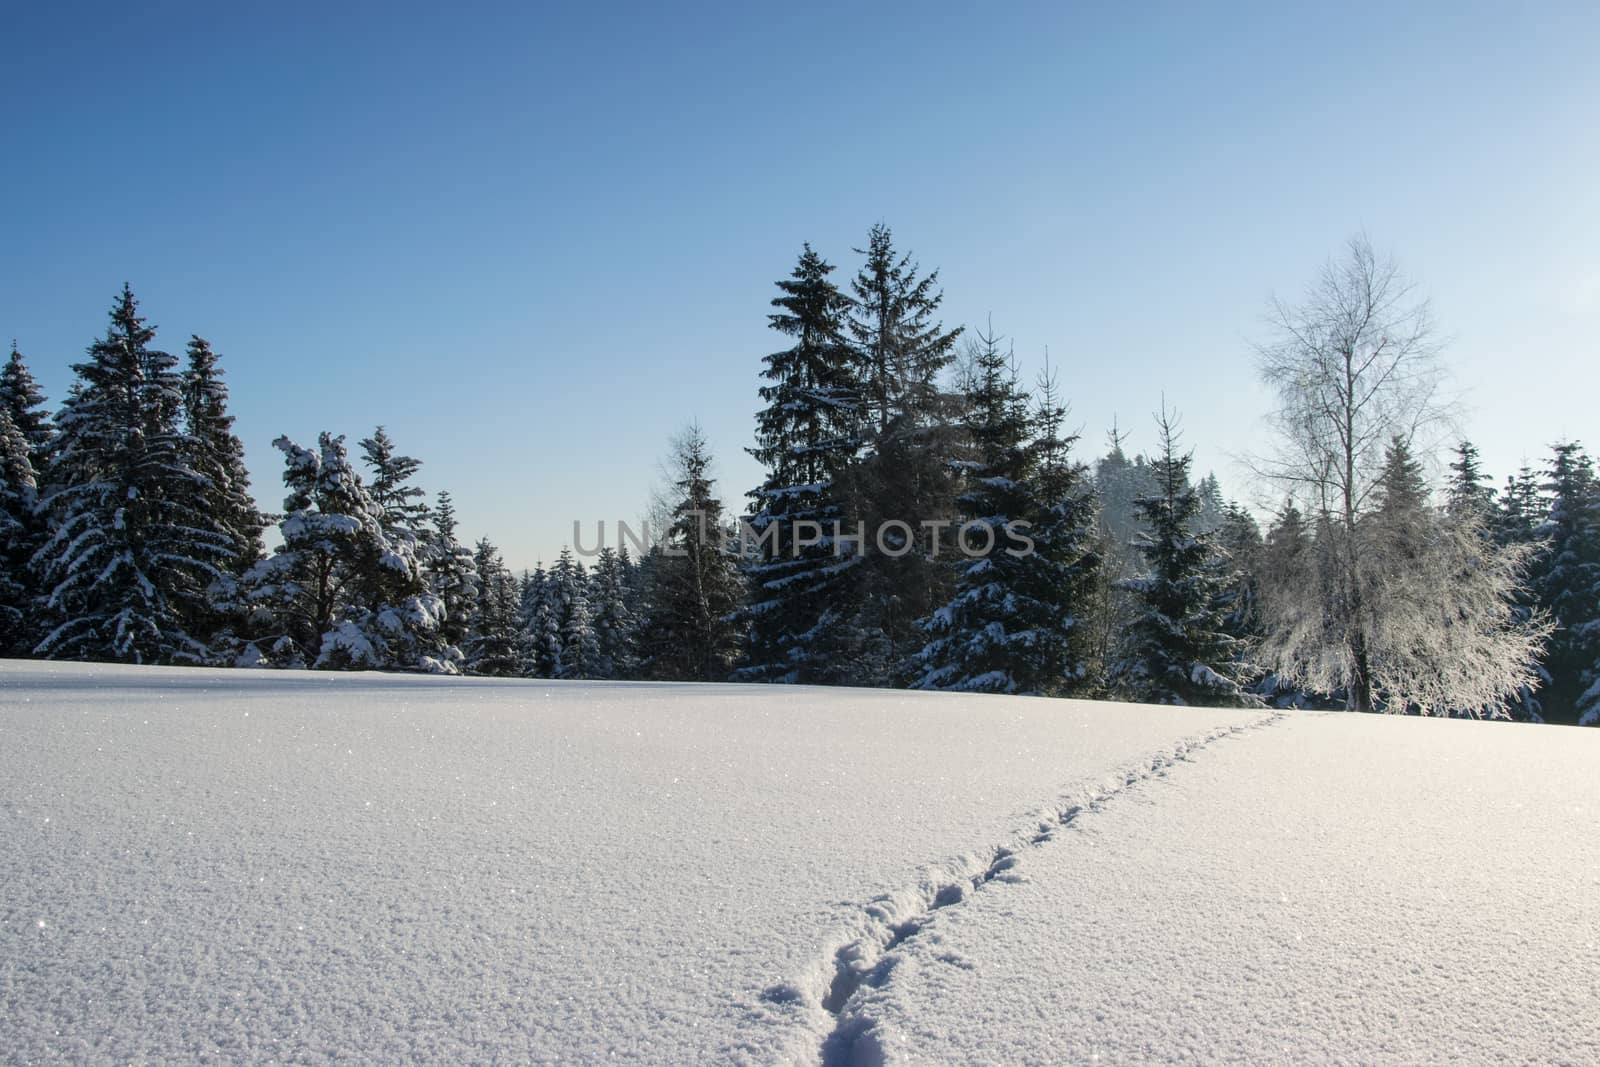 Winter mountain landscape by wdnet_studio